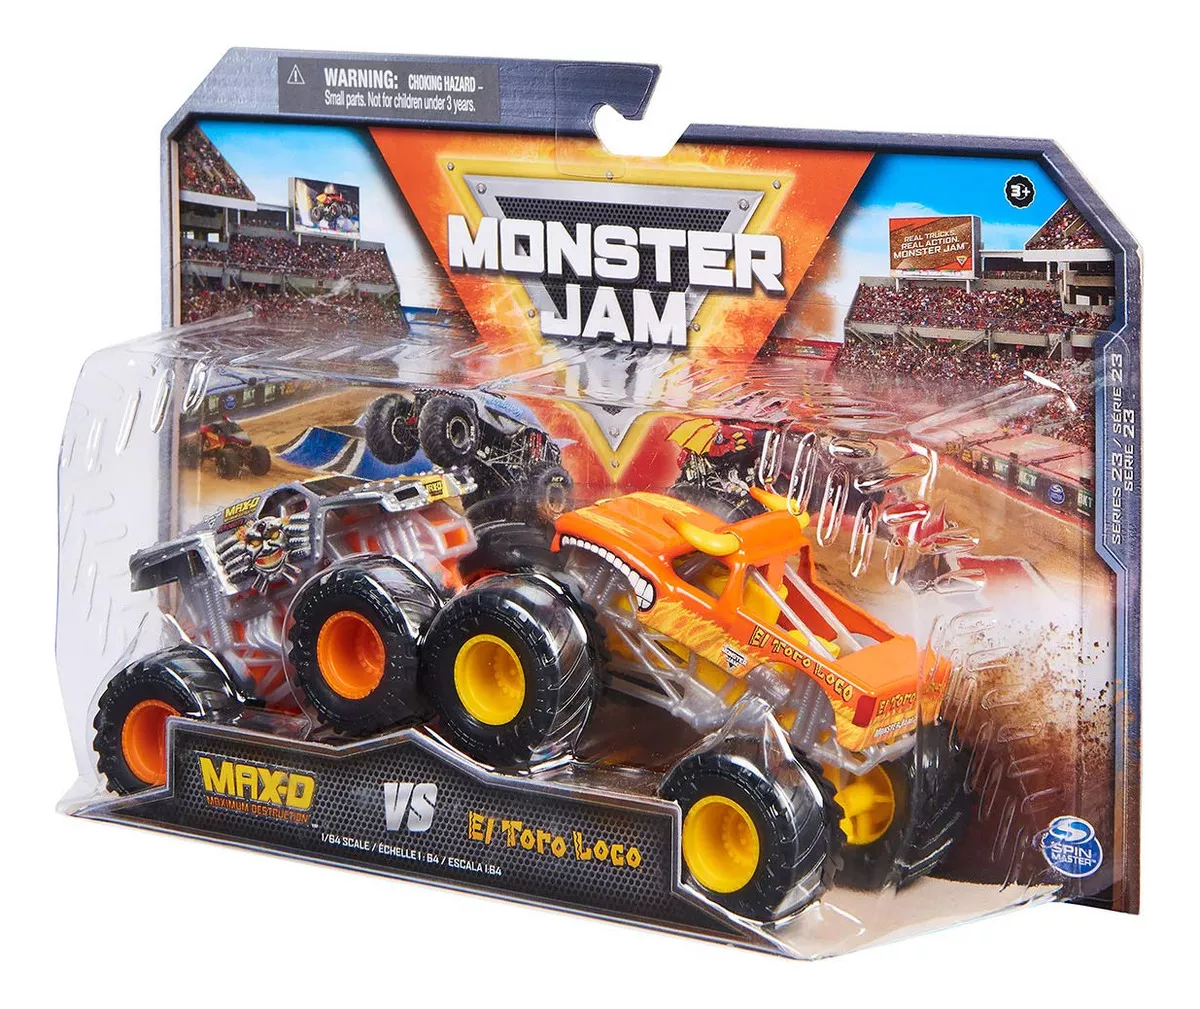 Monster Jam Roda-Livre Escala 1:64 - Mistery Machine - Apteryx Brinquedos